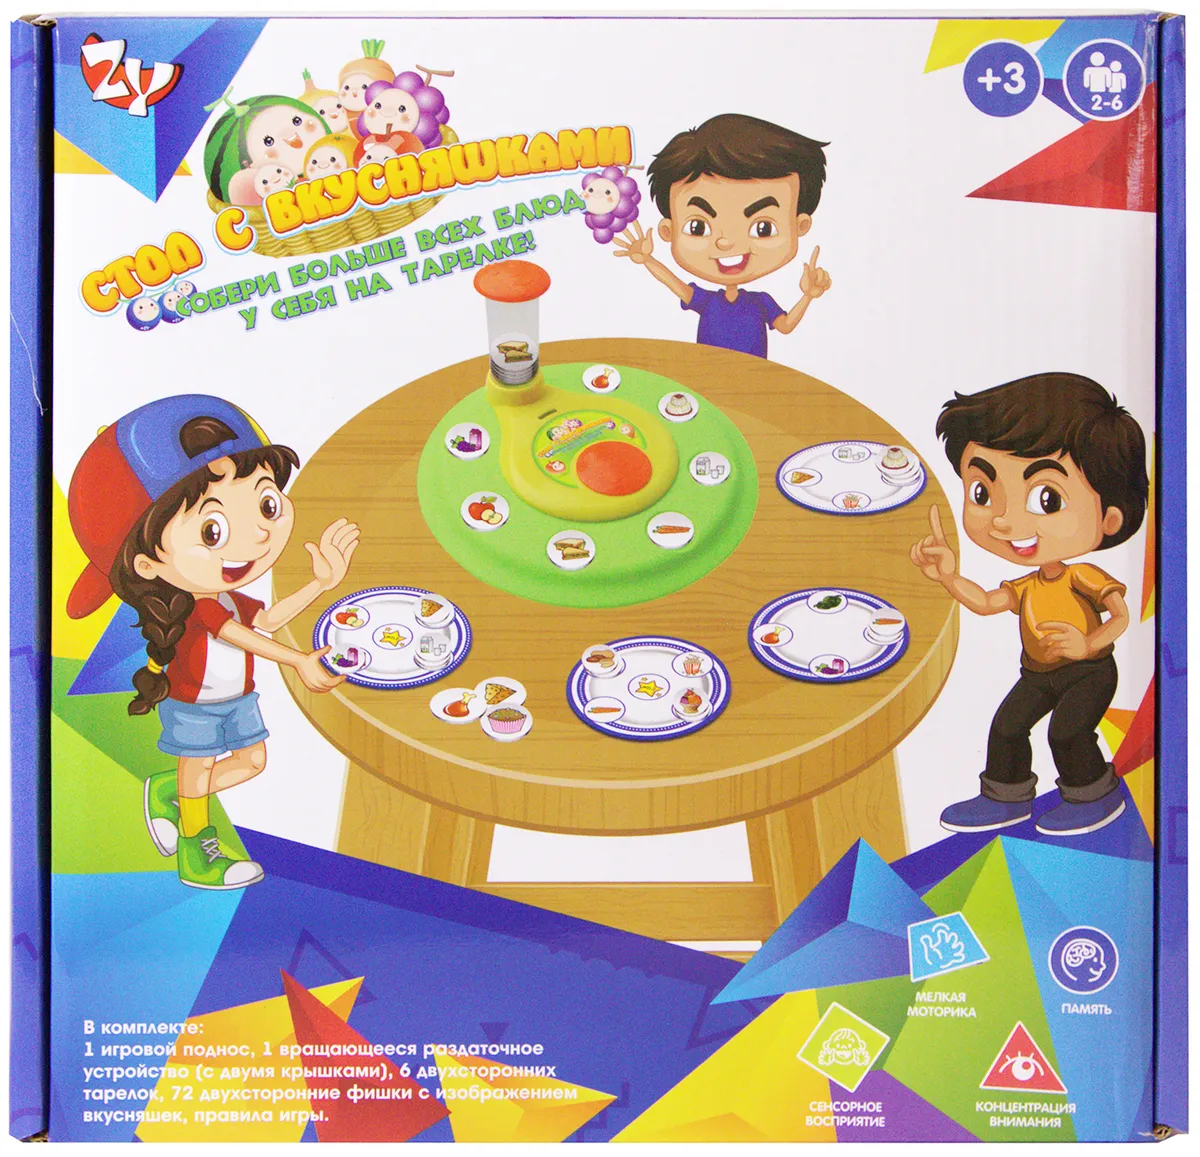 Игры за столом для детей